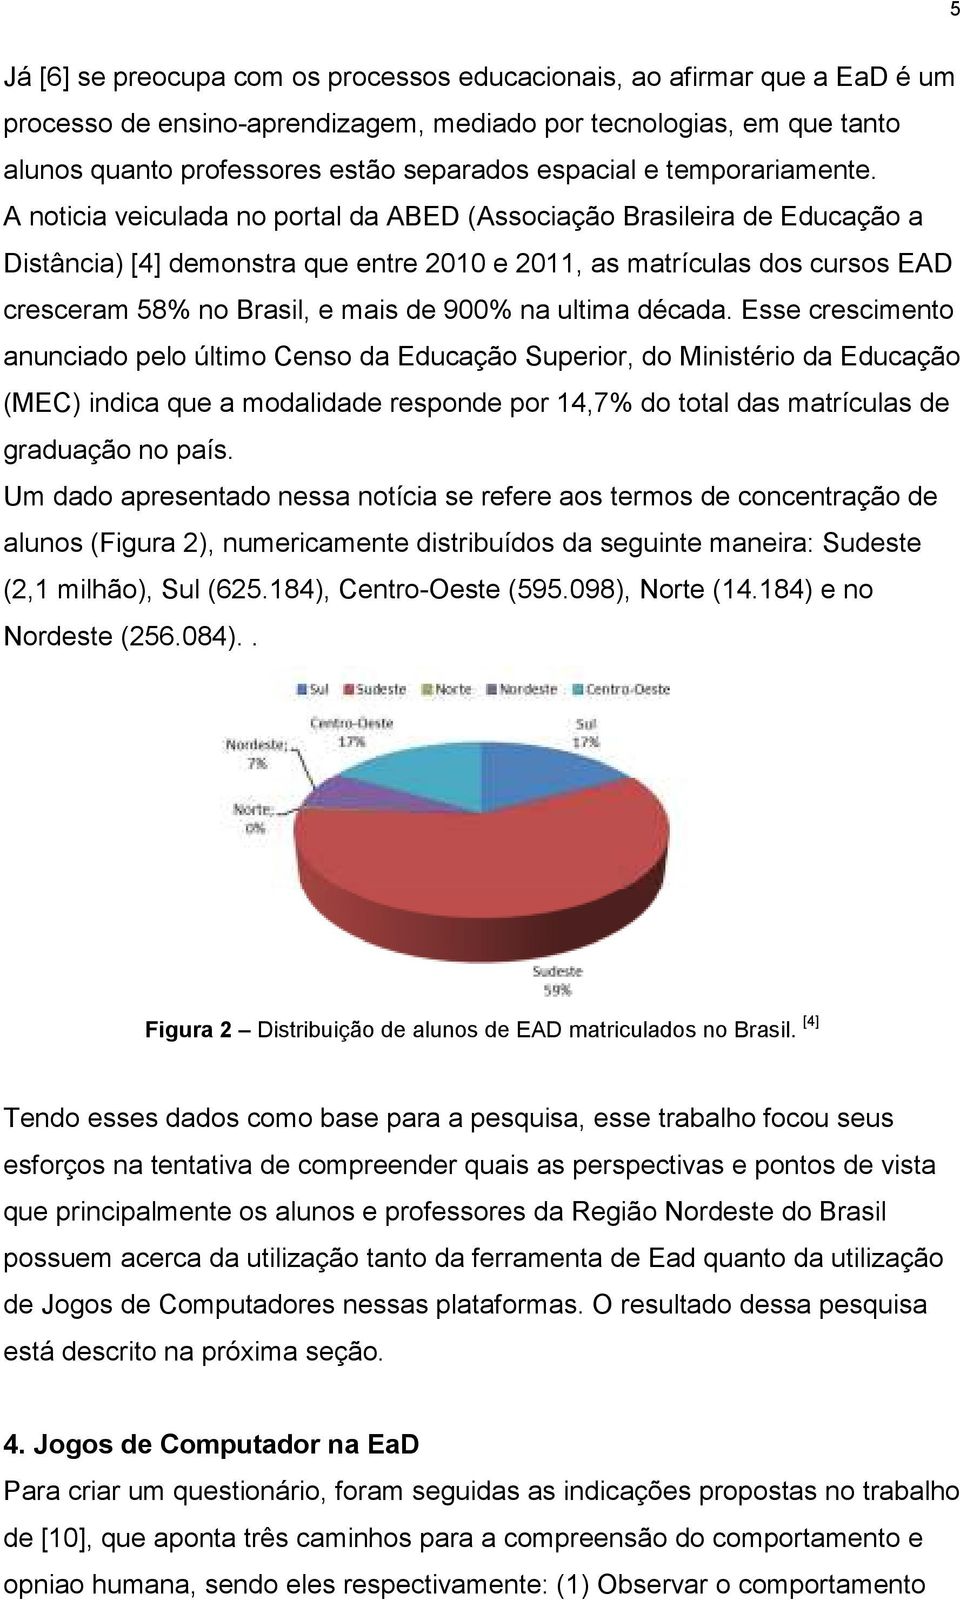 A noticia veiculada no portal da ABED (Associação Brasileira de Educação a Distância) [4] demonstra que entre 2010 e 2011, as matrículas dos cursos EAD cresceram 58% no Brasil, e mais de 900% na